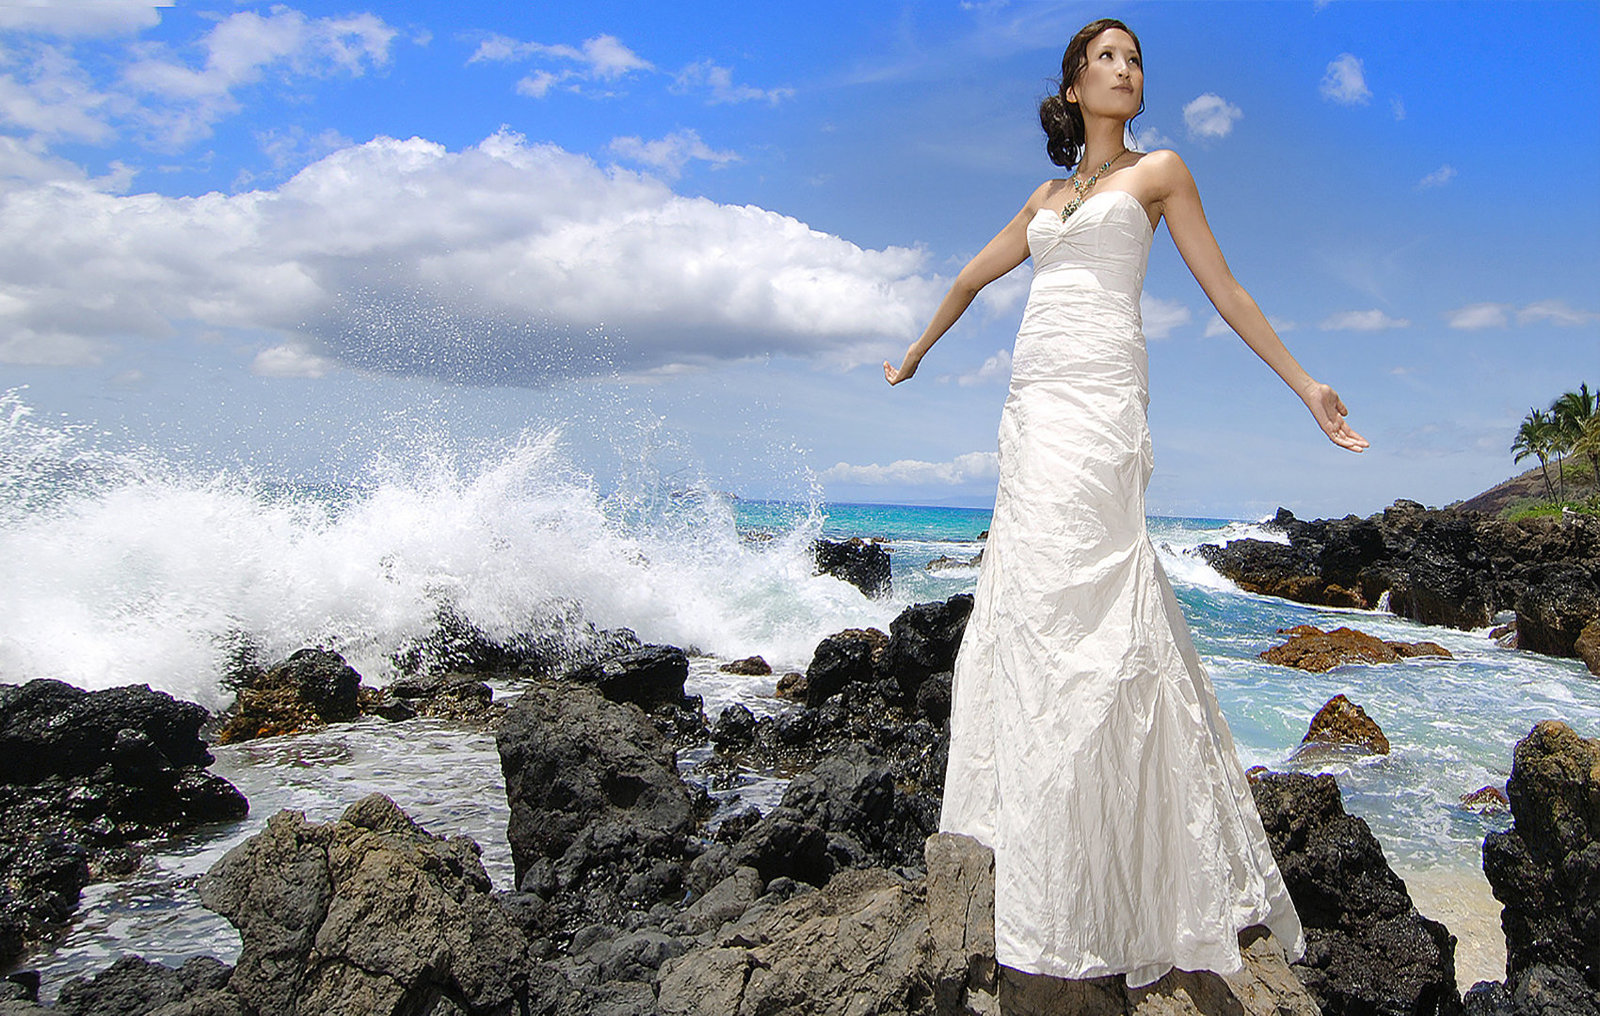 Waikiki Photographers | Family | Weddings |  Couples | Engagement